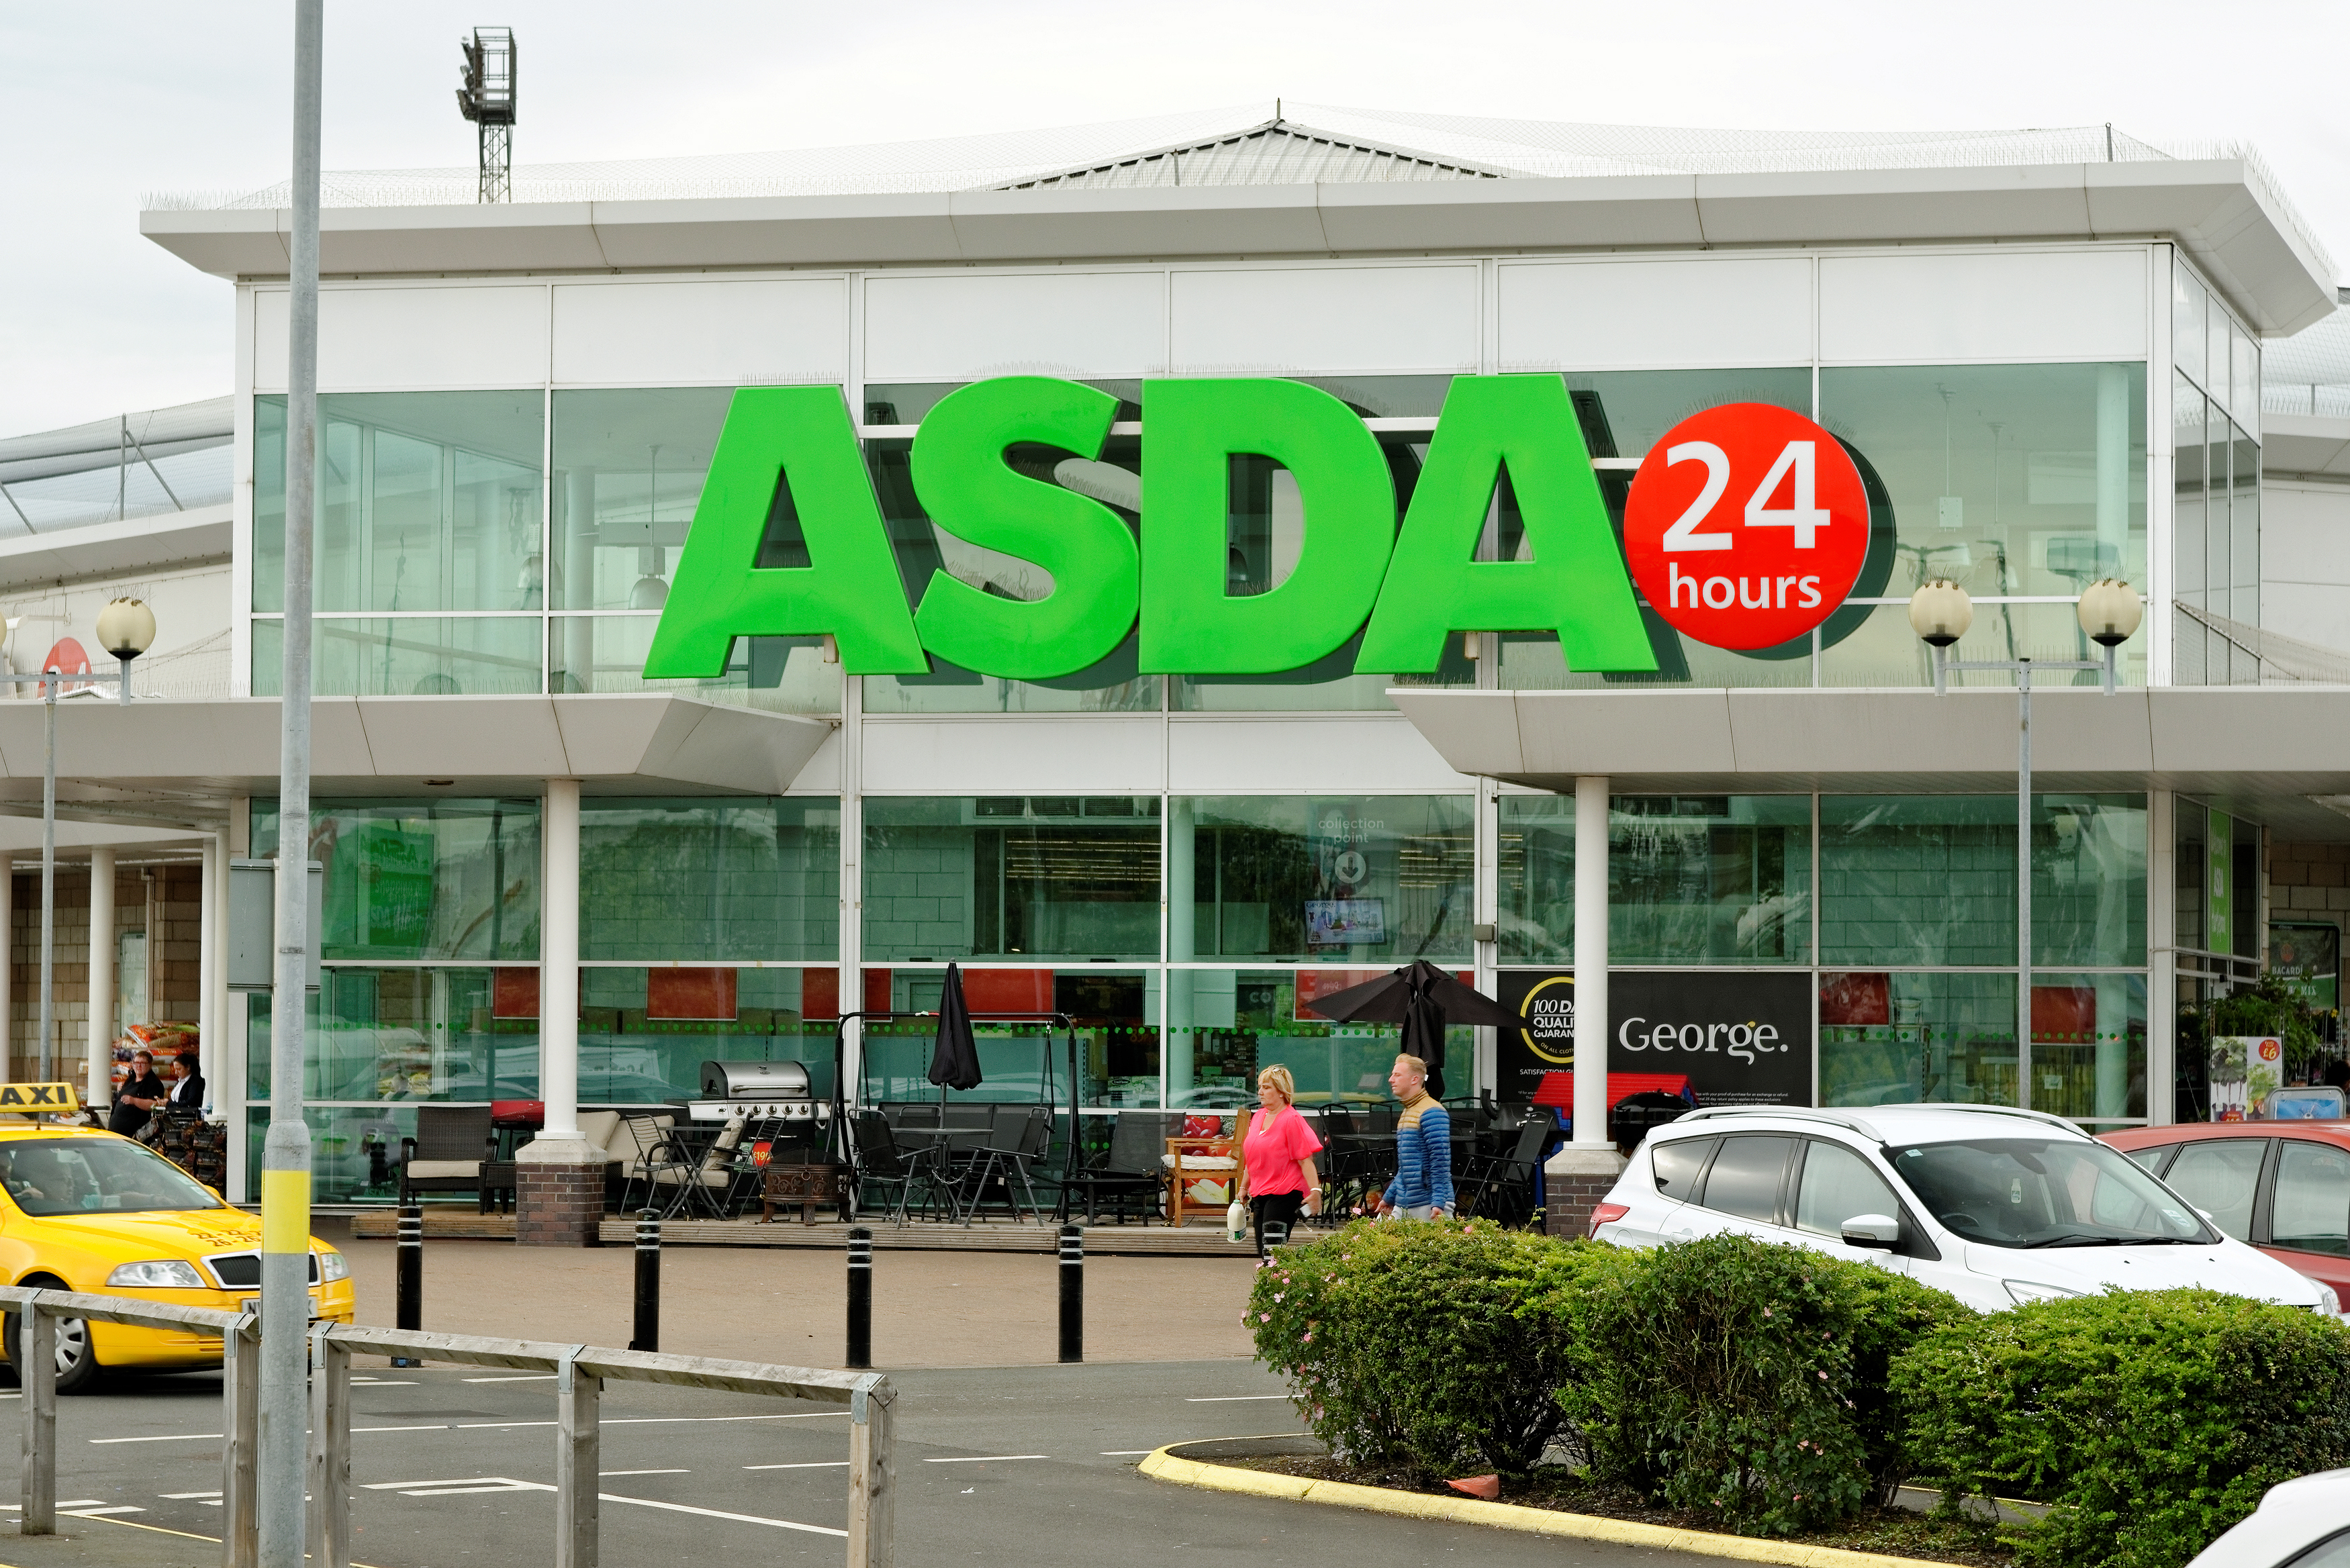 Asda named second-largest supermarket